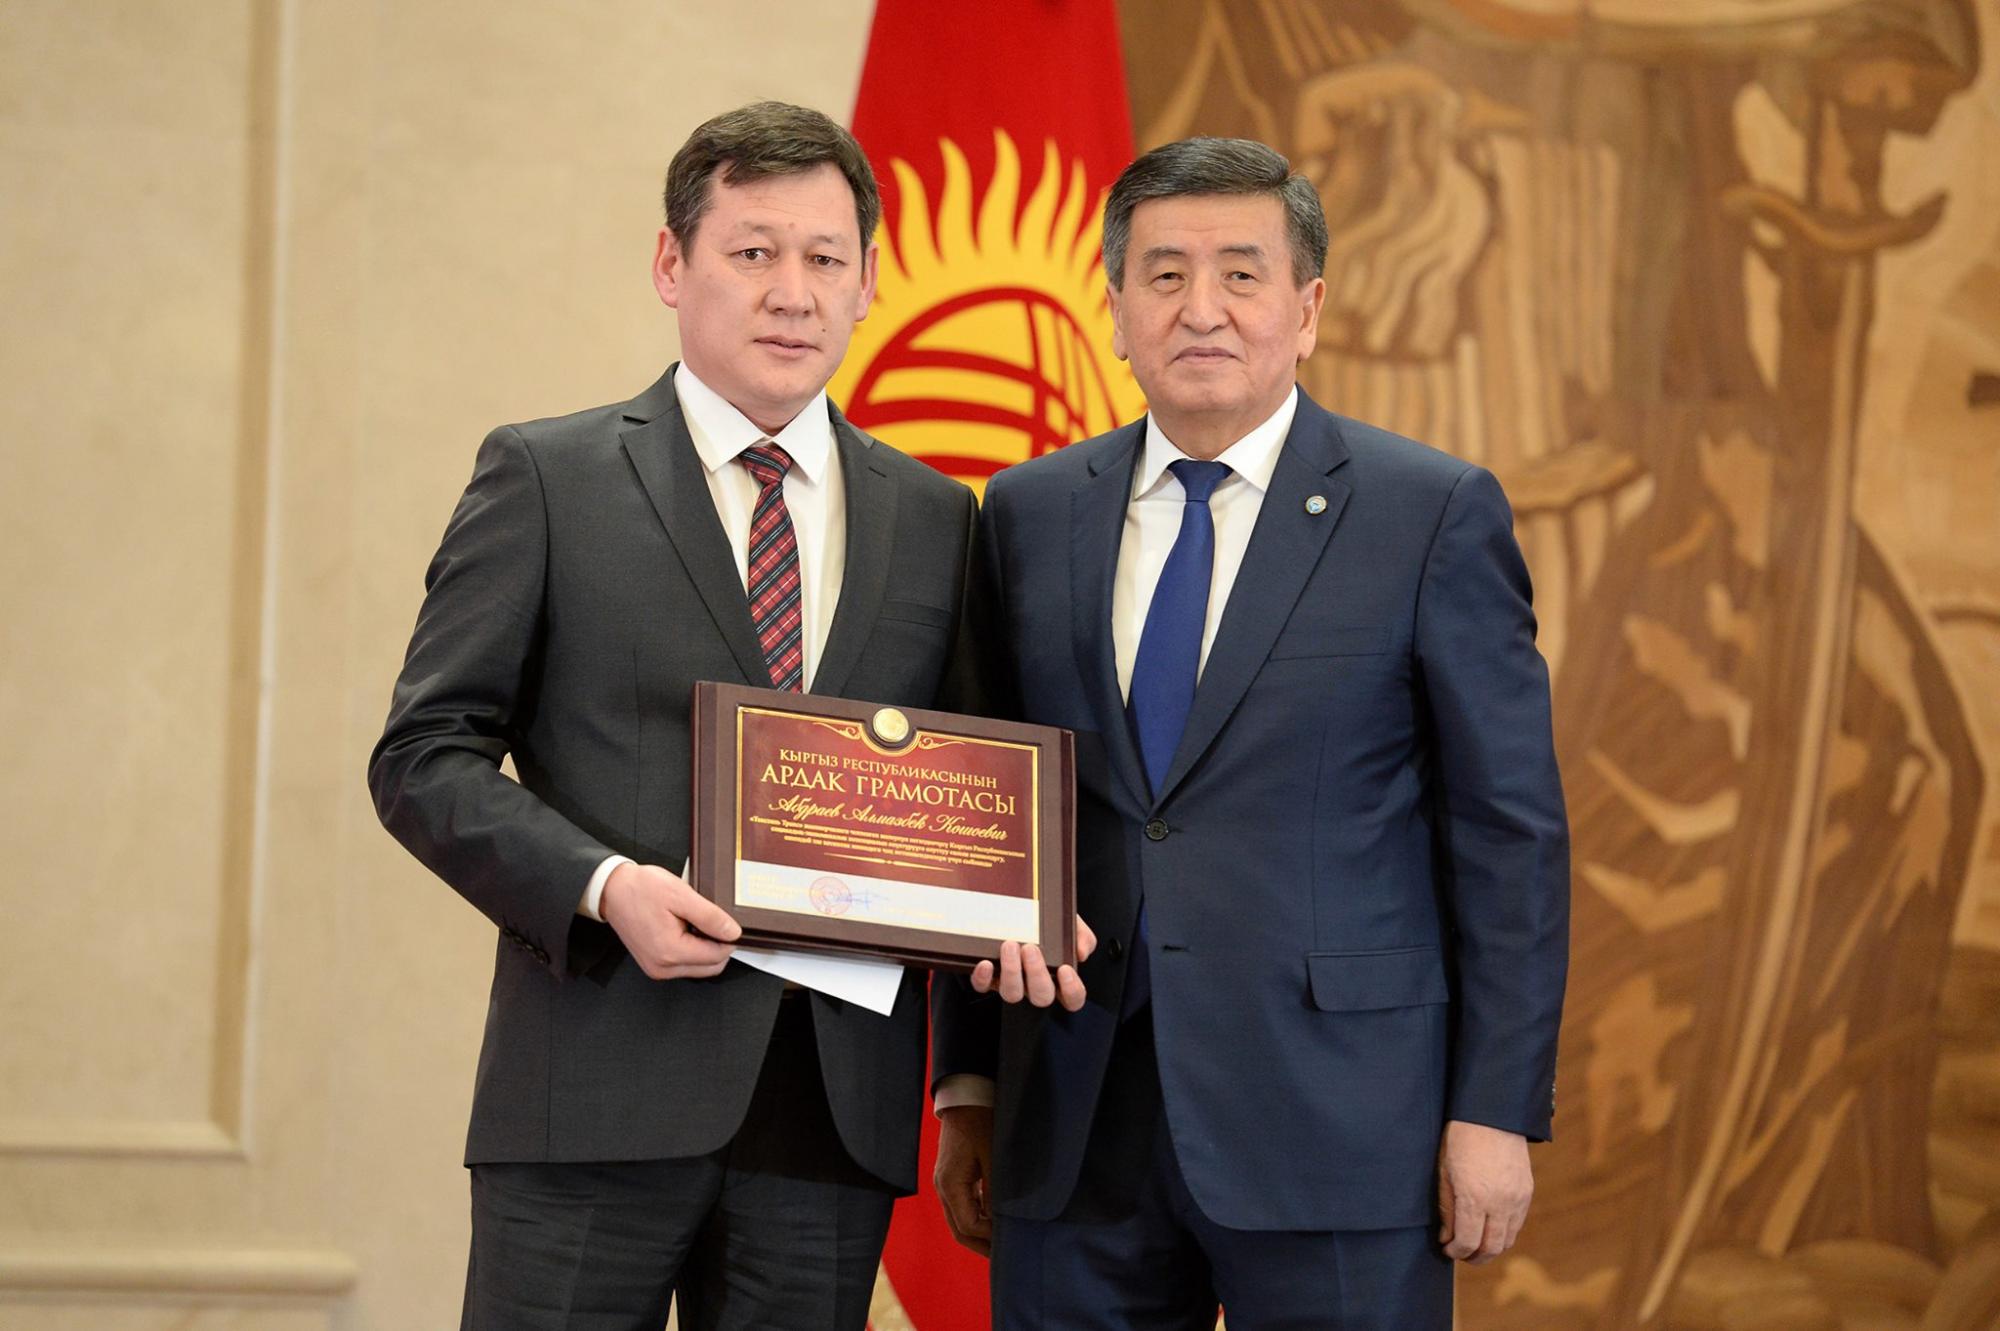 Президент Кыргызстана вручил основателю и владельцу фабрики государственную награду